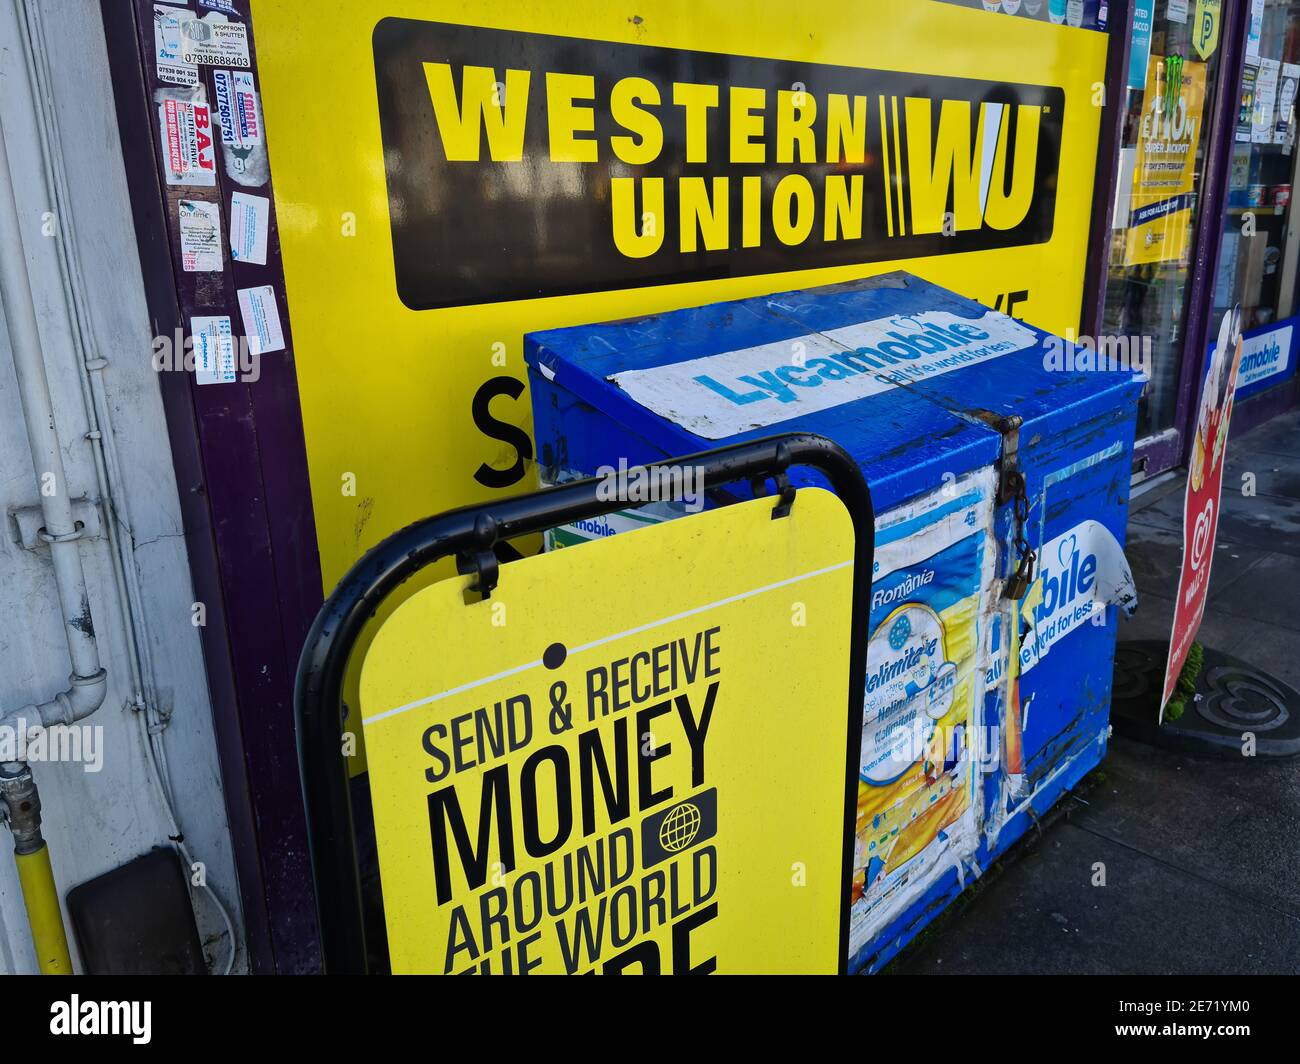 Les panneaux publicitaires pour Western Union à l'extérieur d'un magasin d'angle. Une société de finance américaine offrant un service de transfert d'argent mondial. Banque D'Images